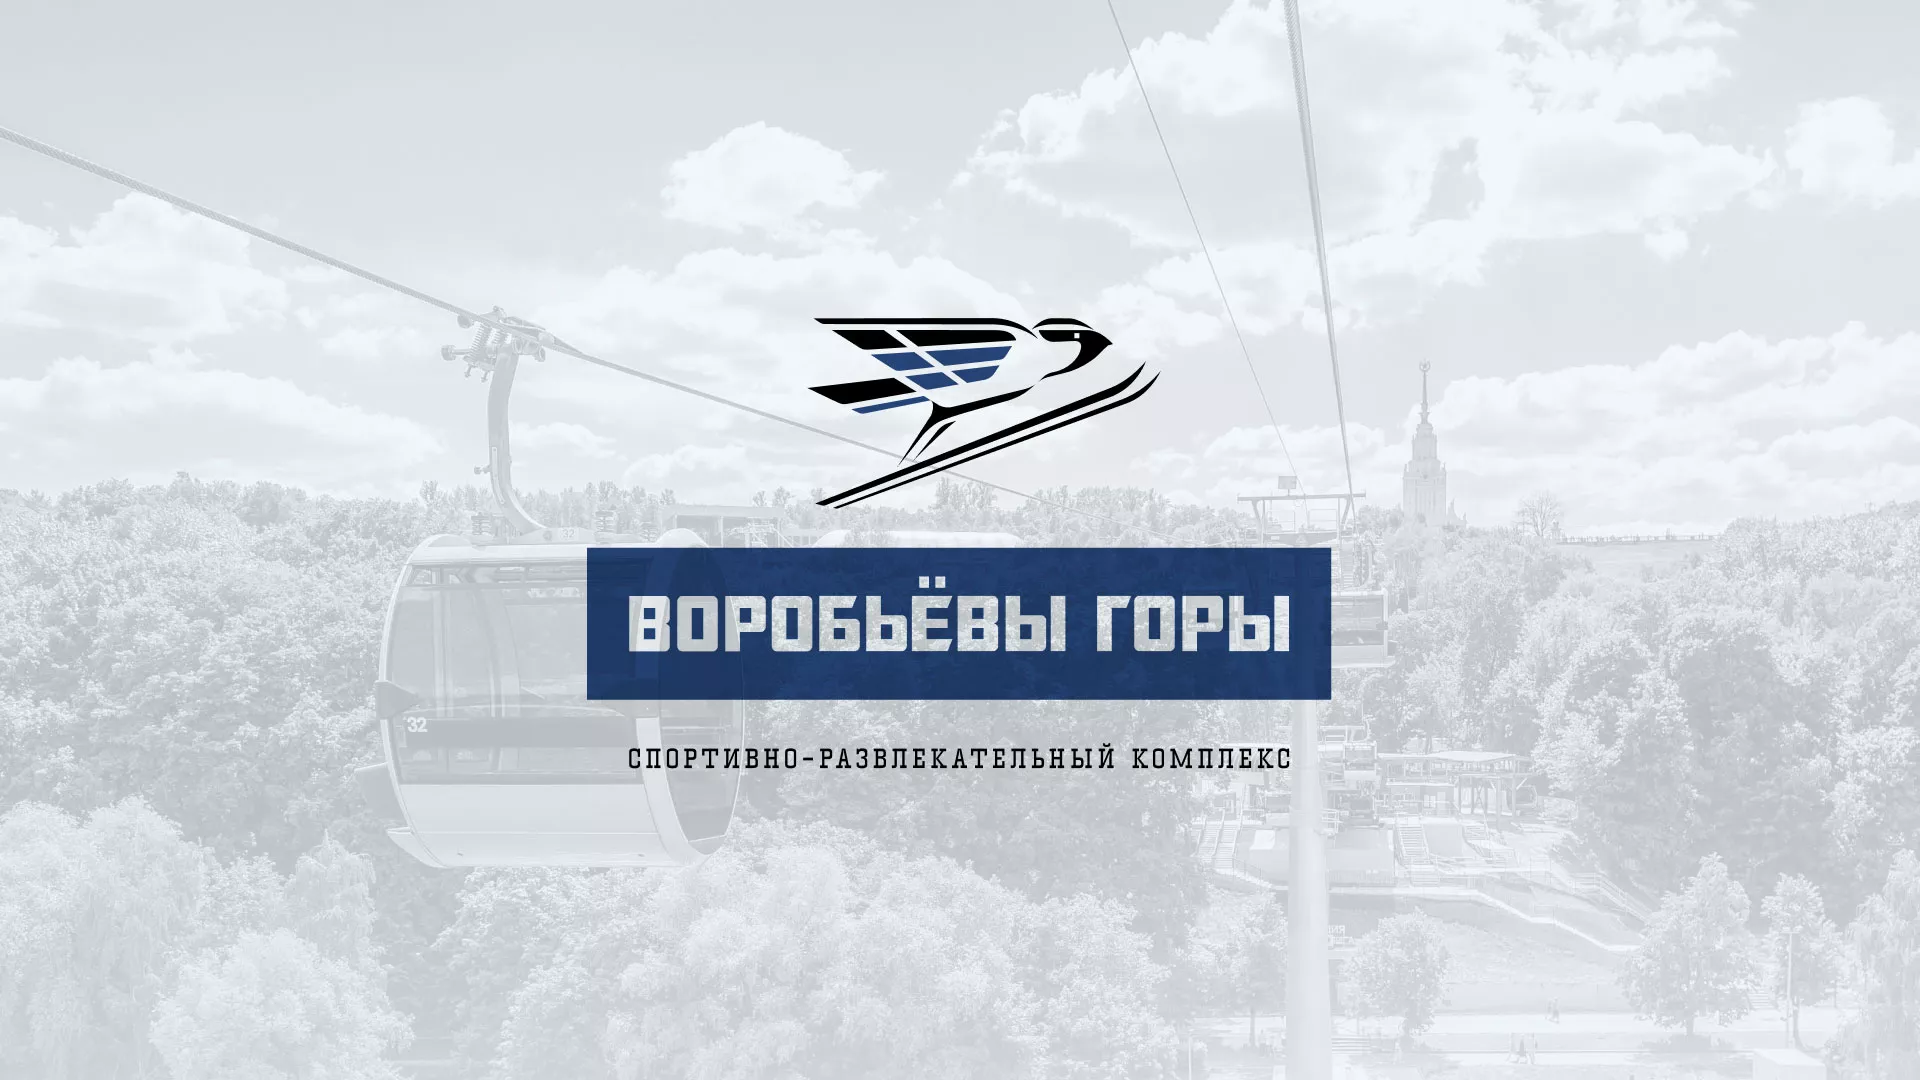 Разработка сайта в Суровикино для спортивно-развлекательного комплекса «Воробьёвы горы»